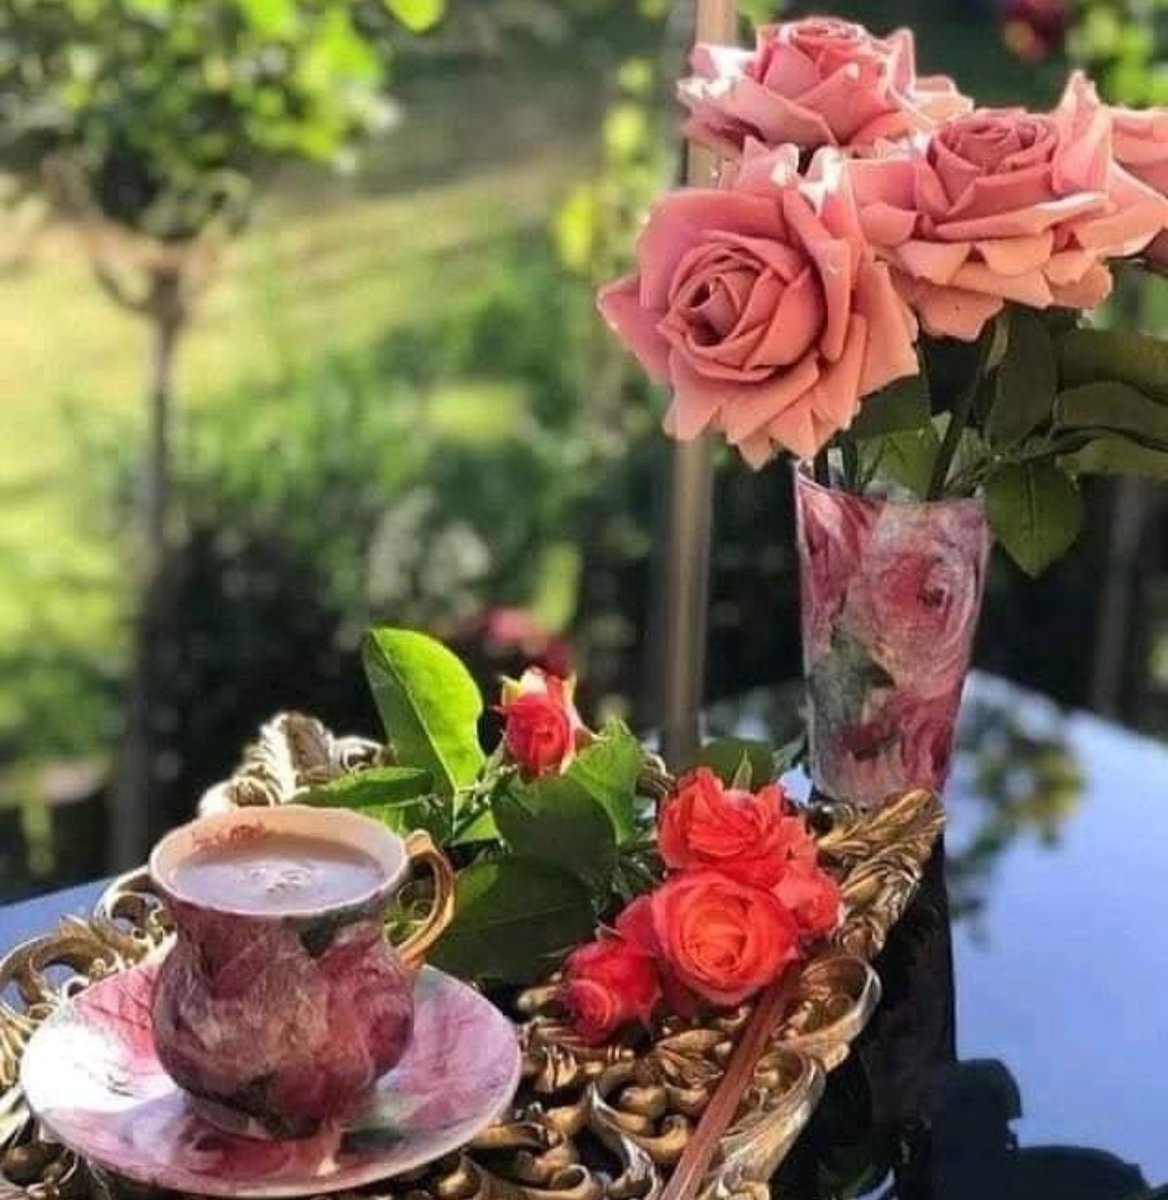 красивые картинки чашка кофе и цветы